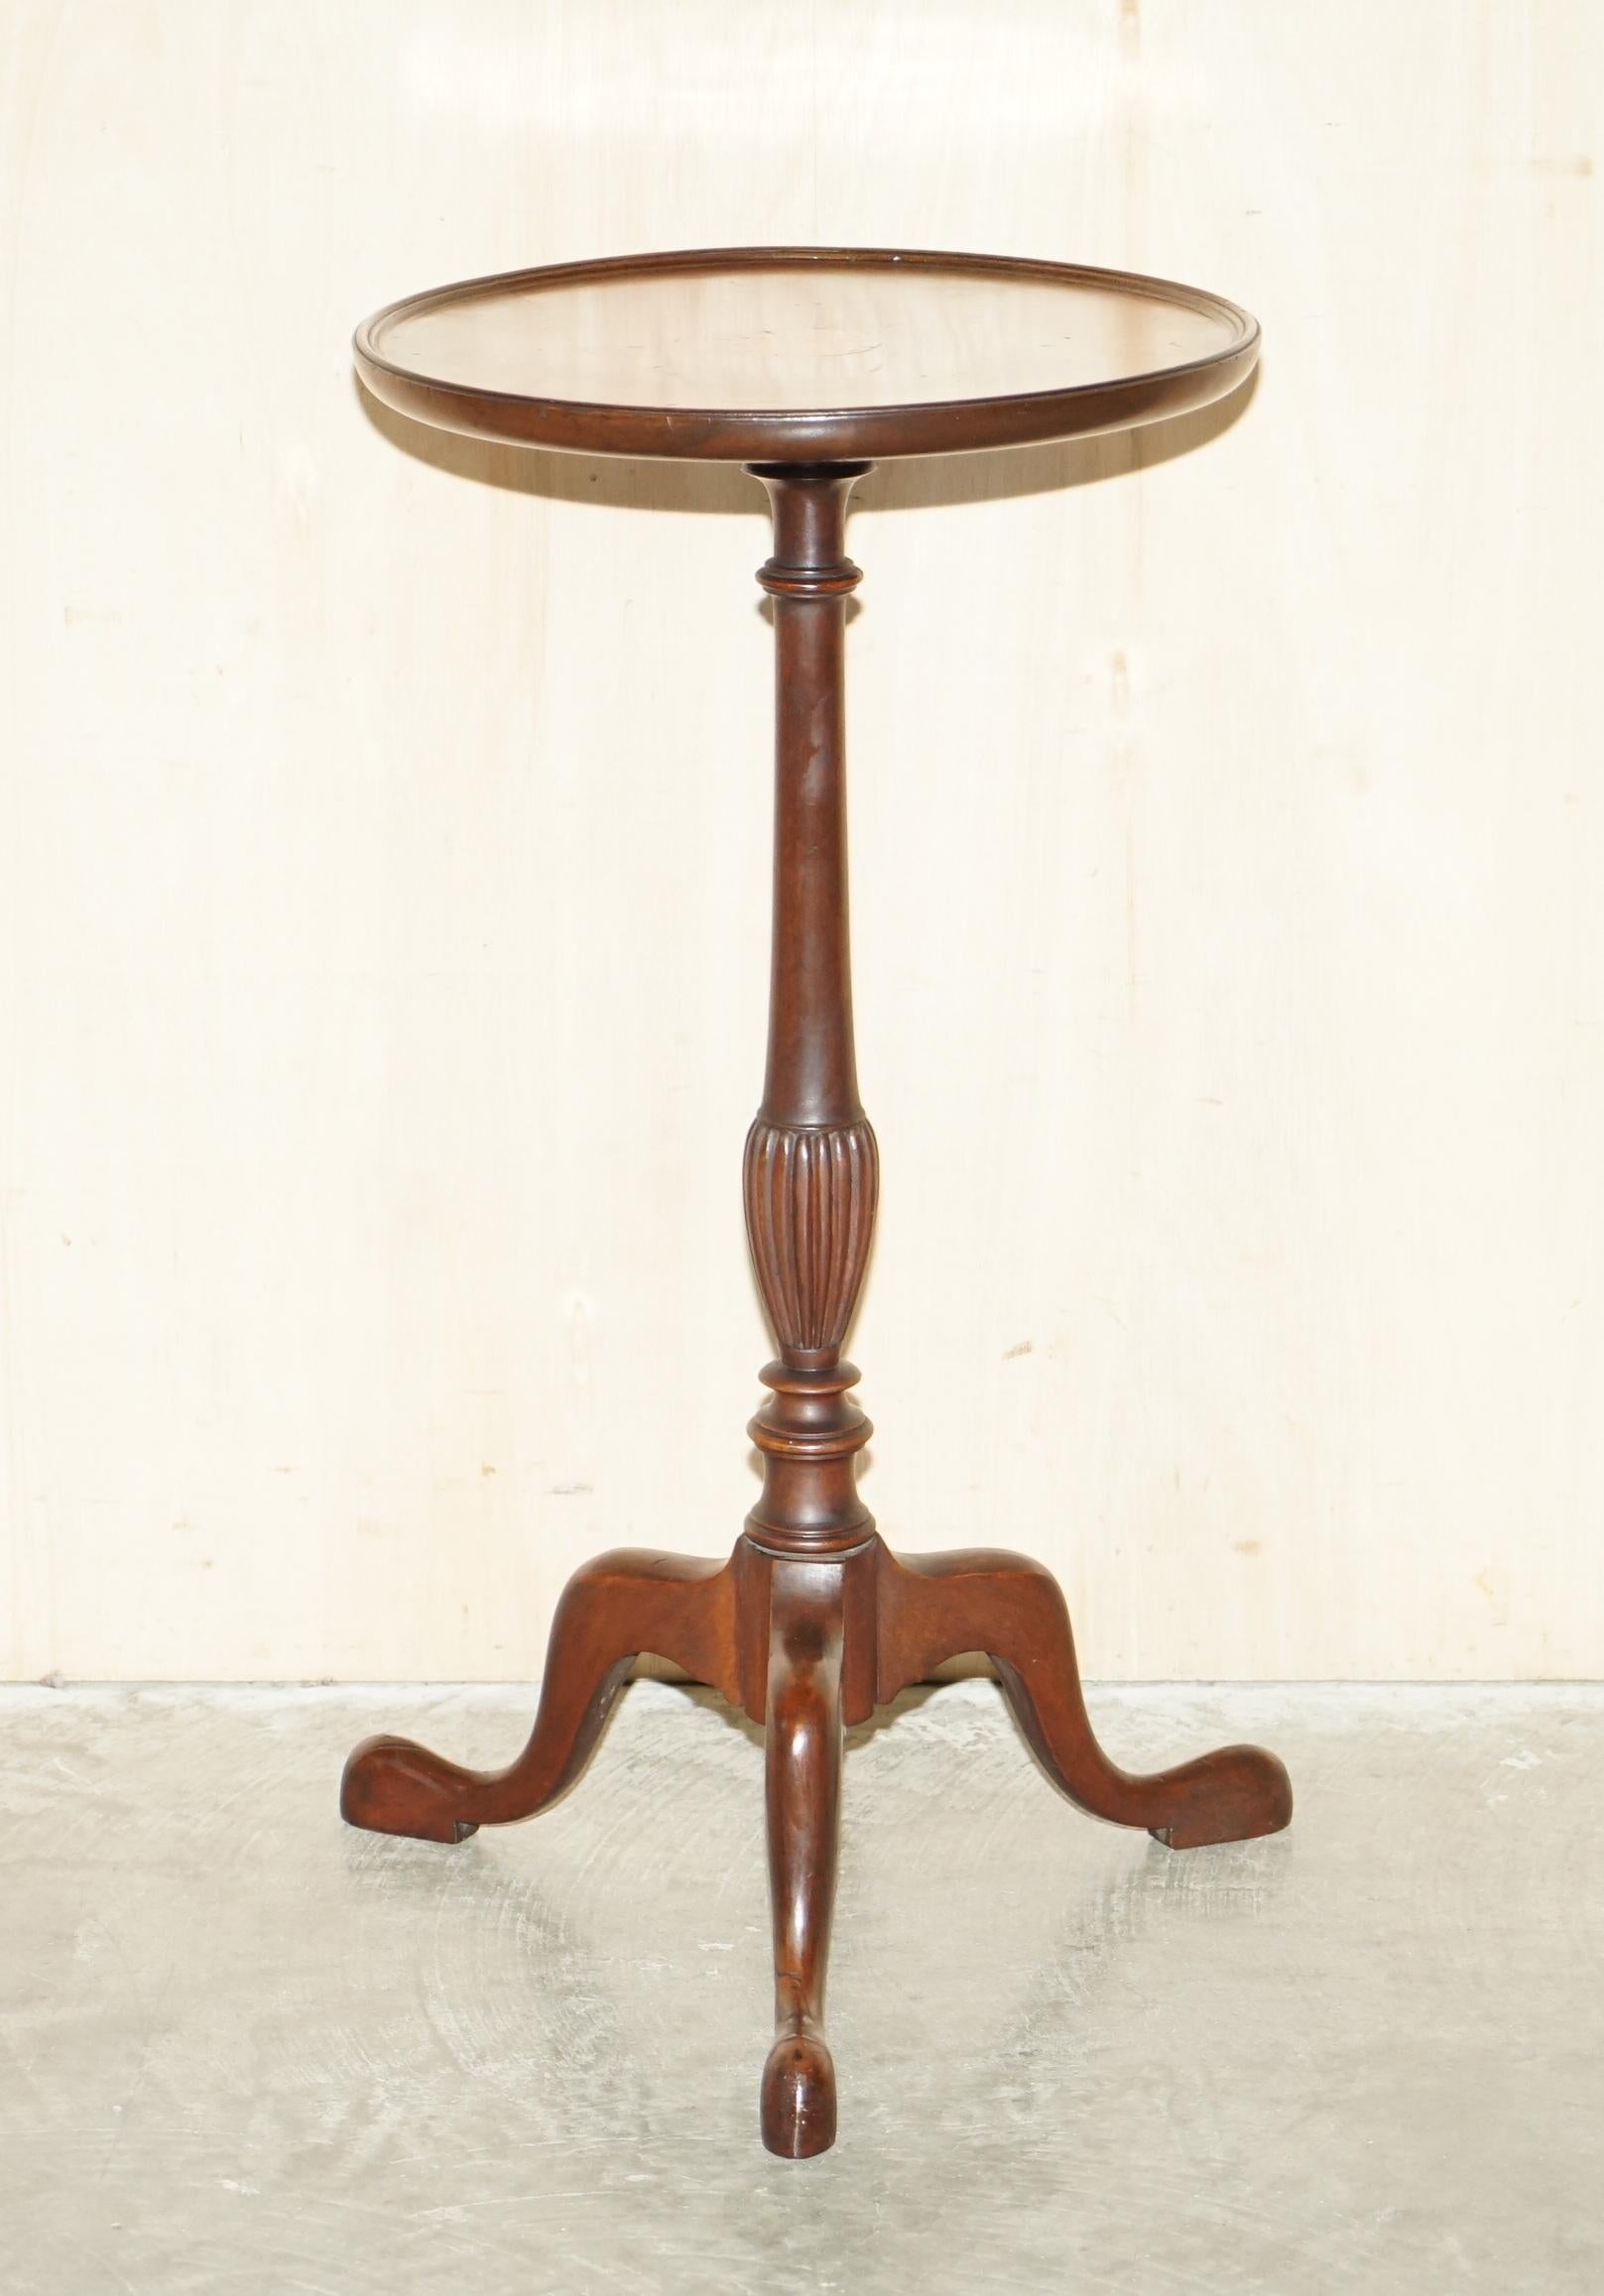 Nous sommes ravis d'offrir à la vente cette charmante table tripode Sheraton Revival des années 1920. 

Il s'agit d'une pièce décorative de très belle facture, qui s'intègre bien dans n'importe quel environnement et qui est très unitaire. La pièce